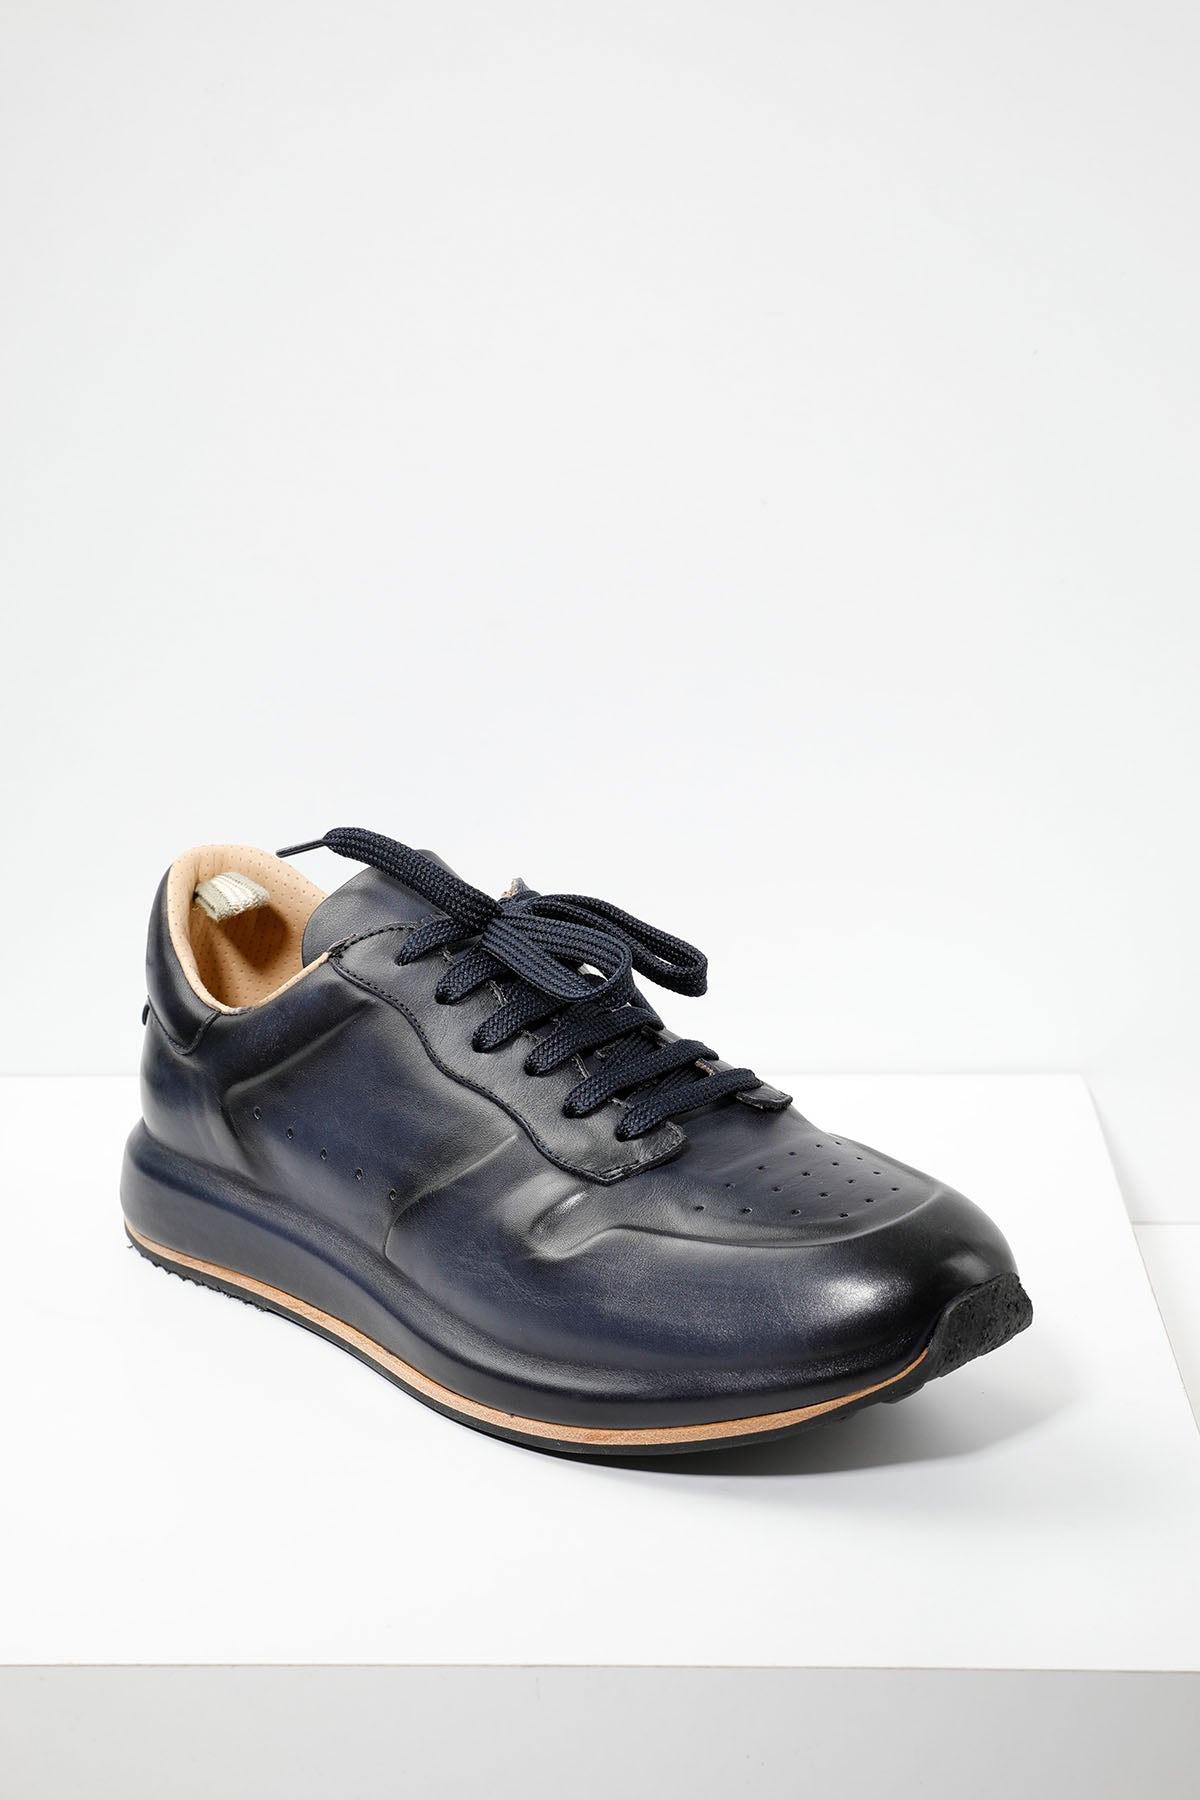 Officine Creative Race Lux Deri Sneaker Ayakkabı-Libas Trendy Fashion Store